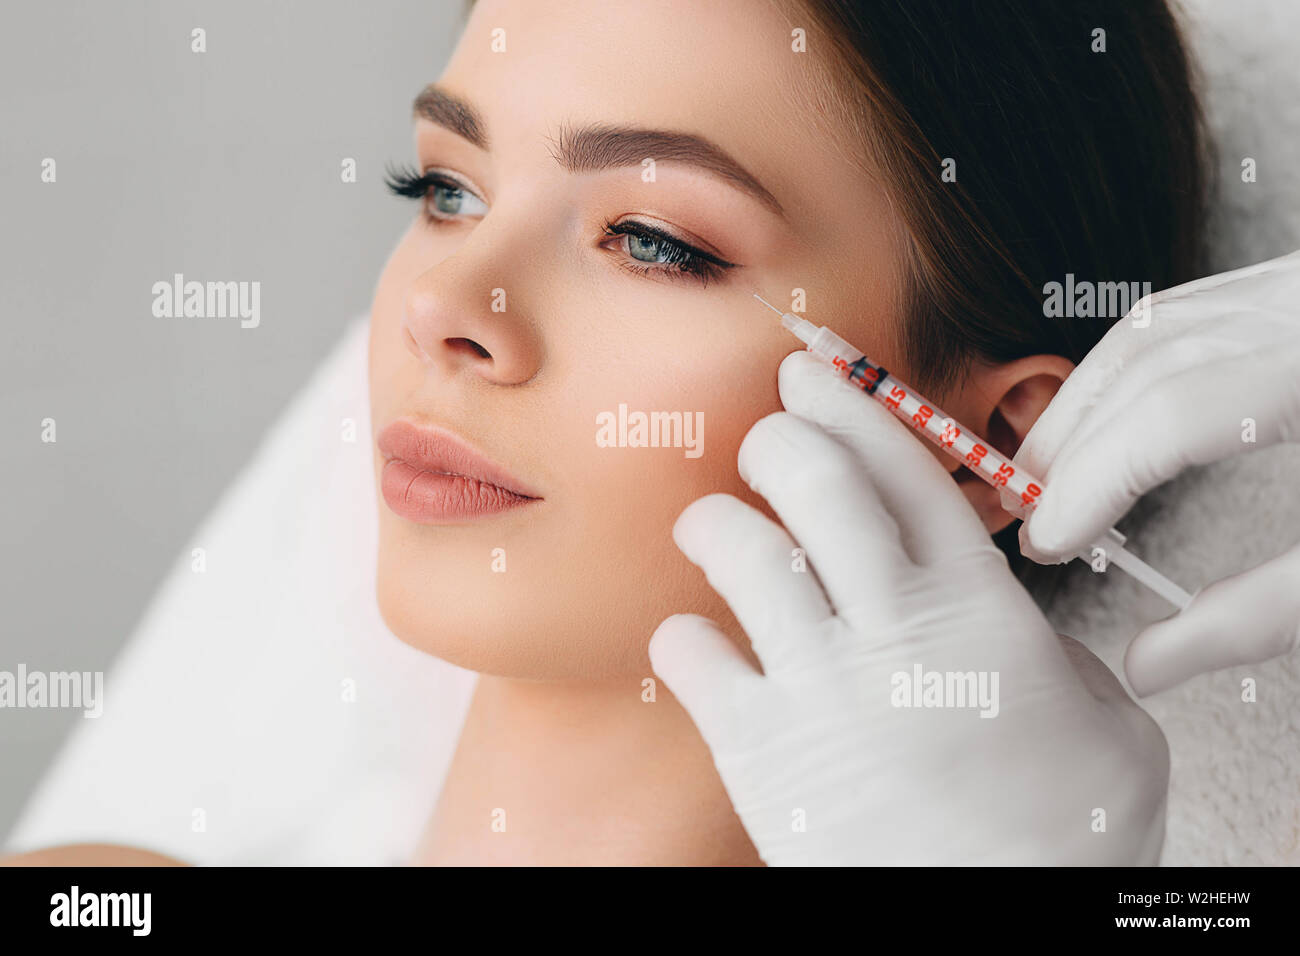 Femme avec de beaux yeux obtenir des injections de beauté. Biorevitalization procédure, rafraîchissant la peau Banque D'Images